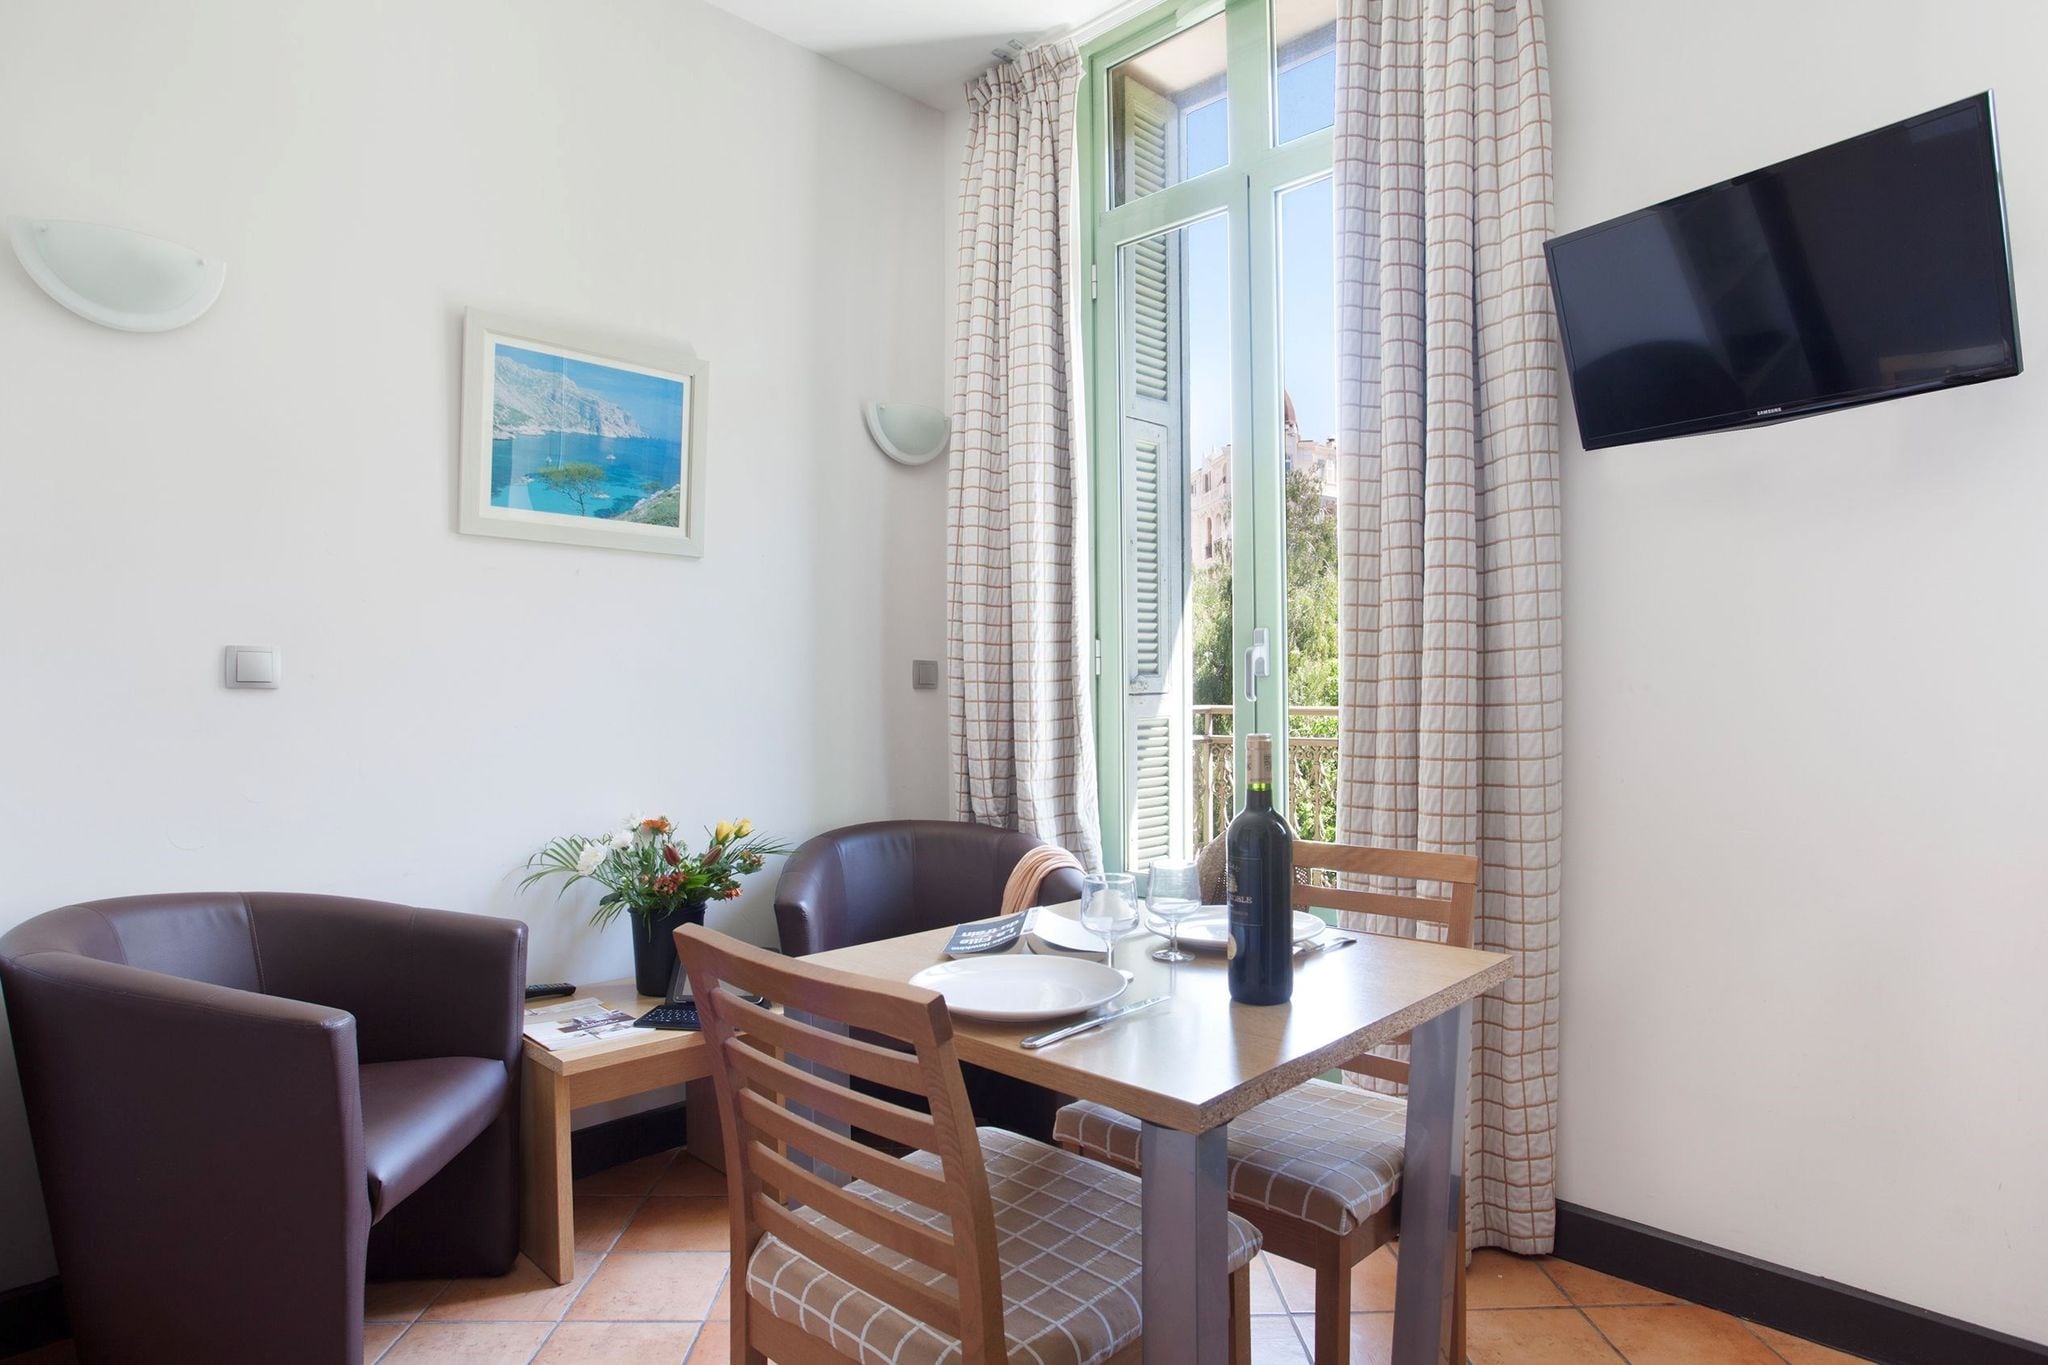 Bel appartement dans un ancien hôtel au cœur de Nice